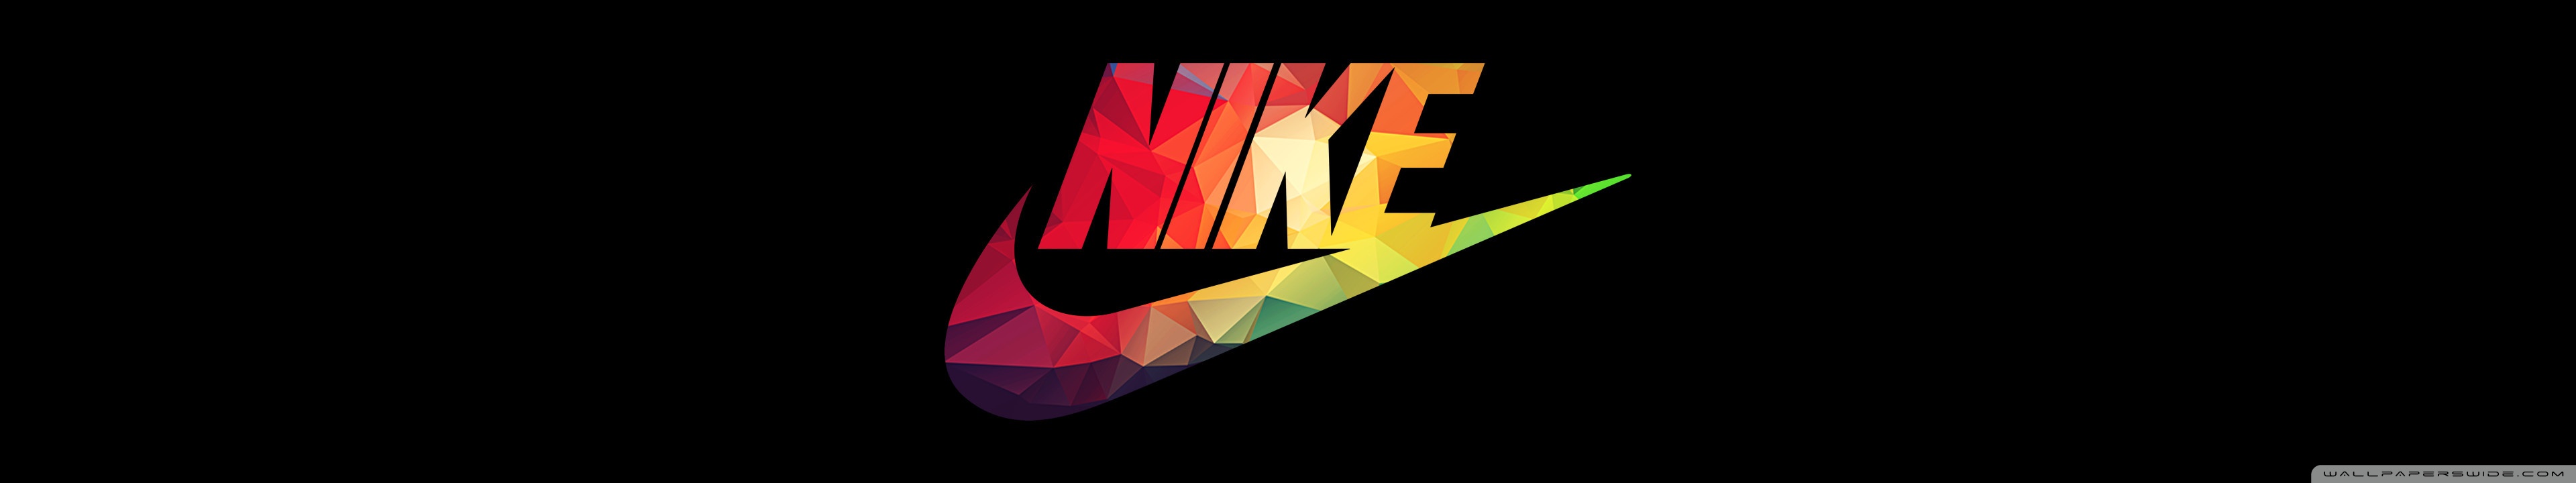 Nike Ultra HD Desktop Background Wallpaper for : Widescreen & UltraWide ...